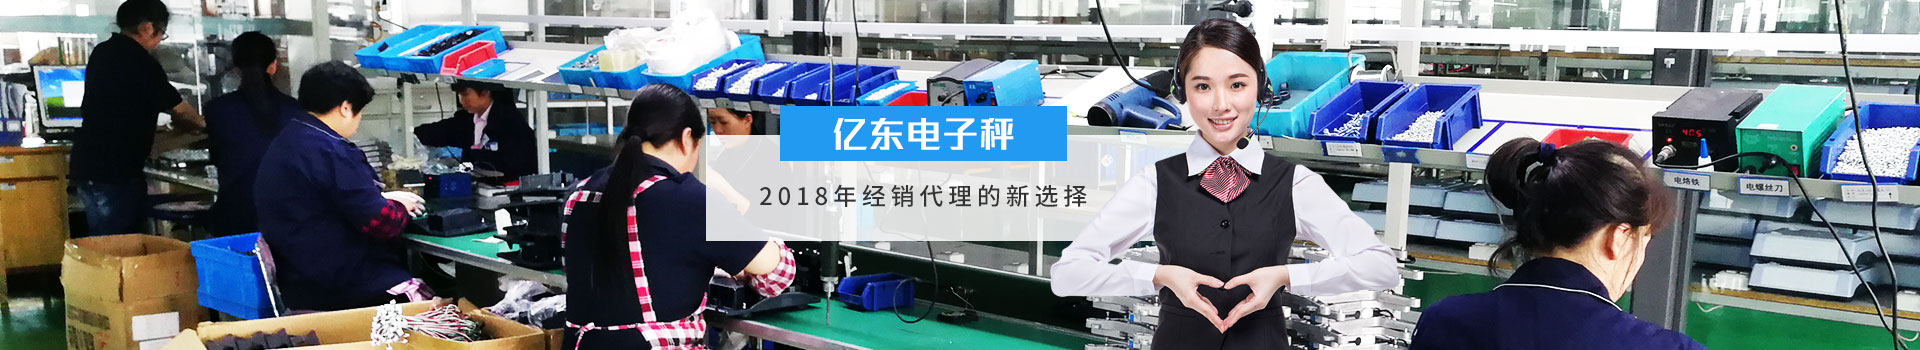 亿东电子秤2018年经销代理的新选择